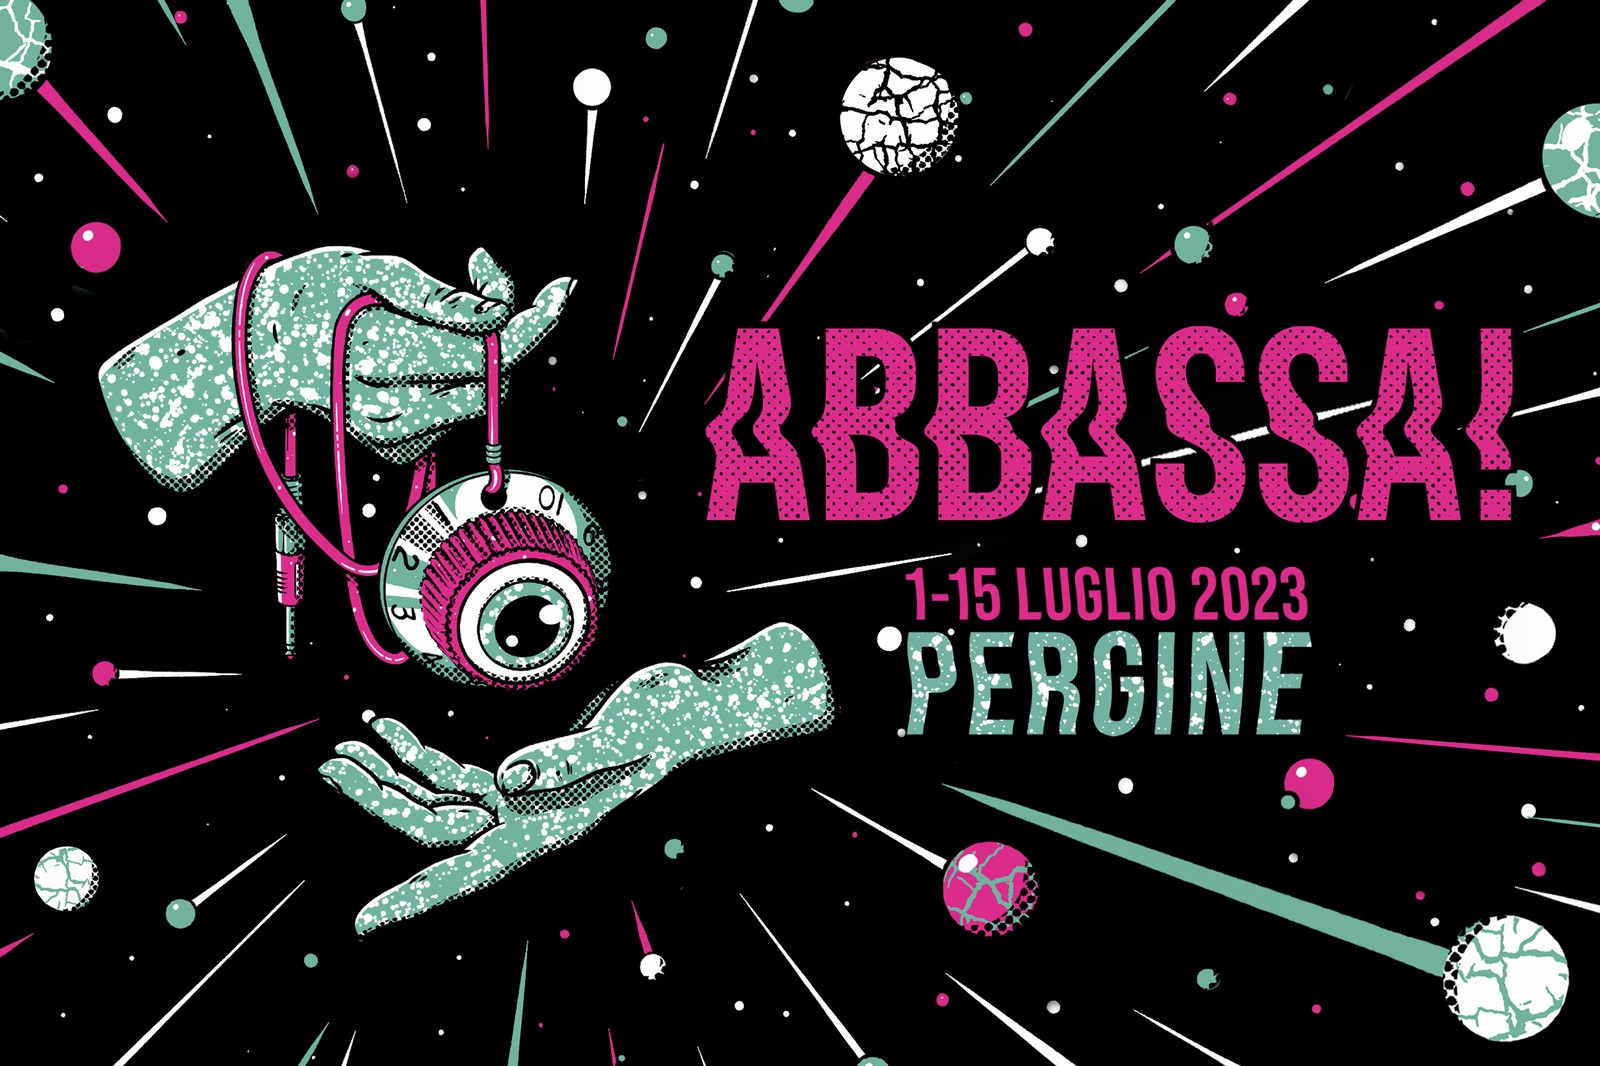 Immagine promozionale della programmazione musicale di Pergine festival. Al centro grande la scritta ABBASSA in rosa. Due mani muovono un pendolo.